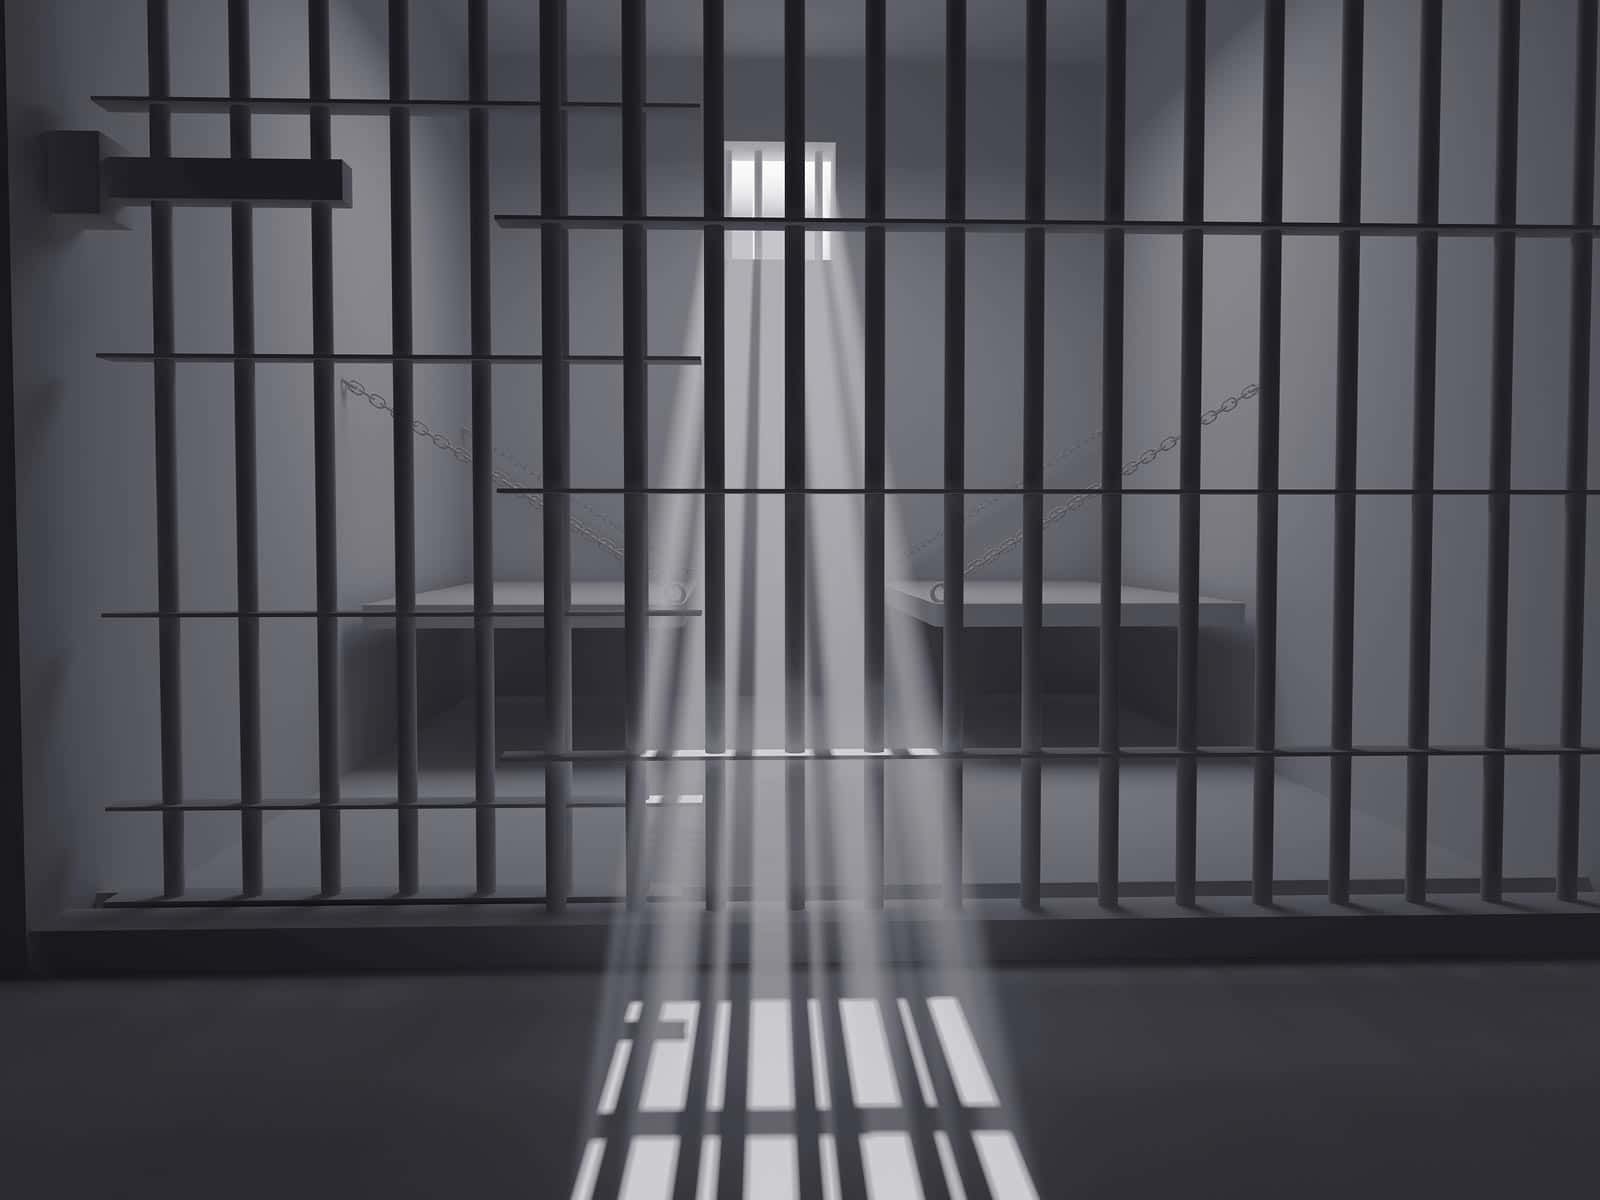 Unacelda De Prisión Con Luz Pasando A Través De Los Barrotes